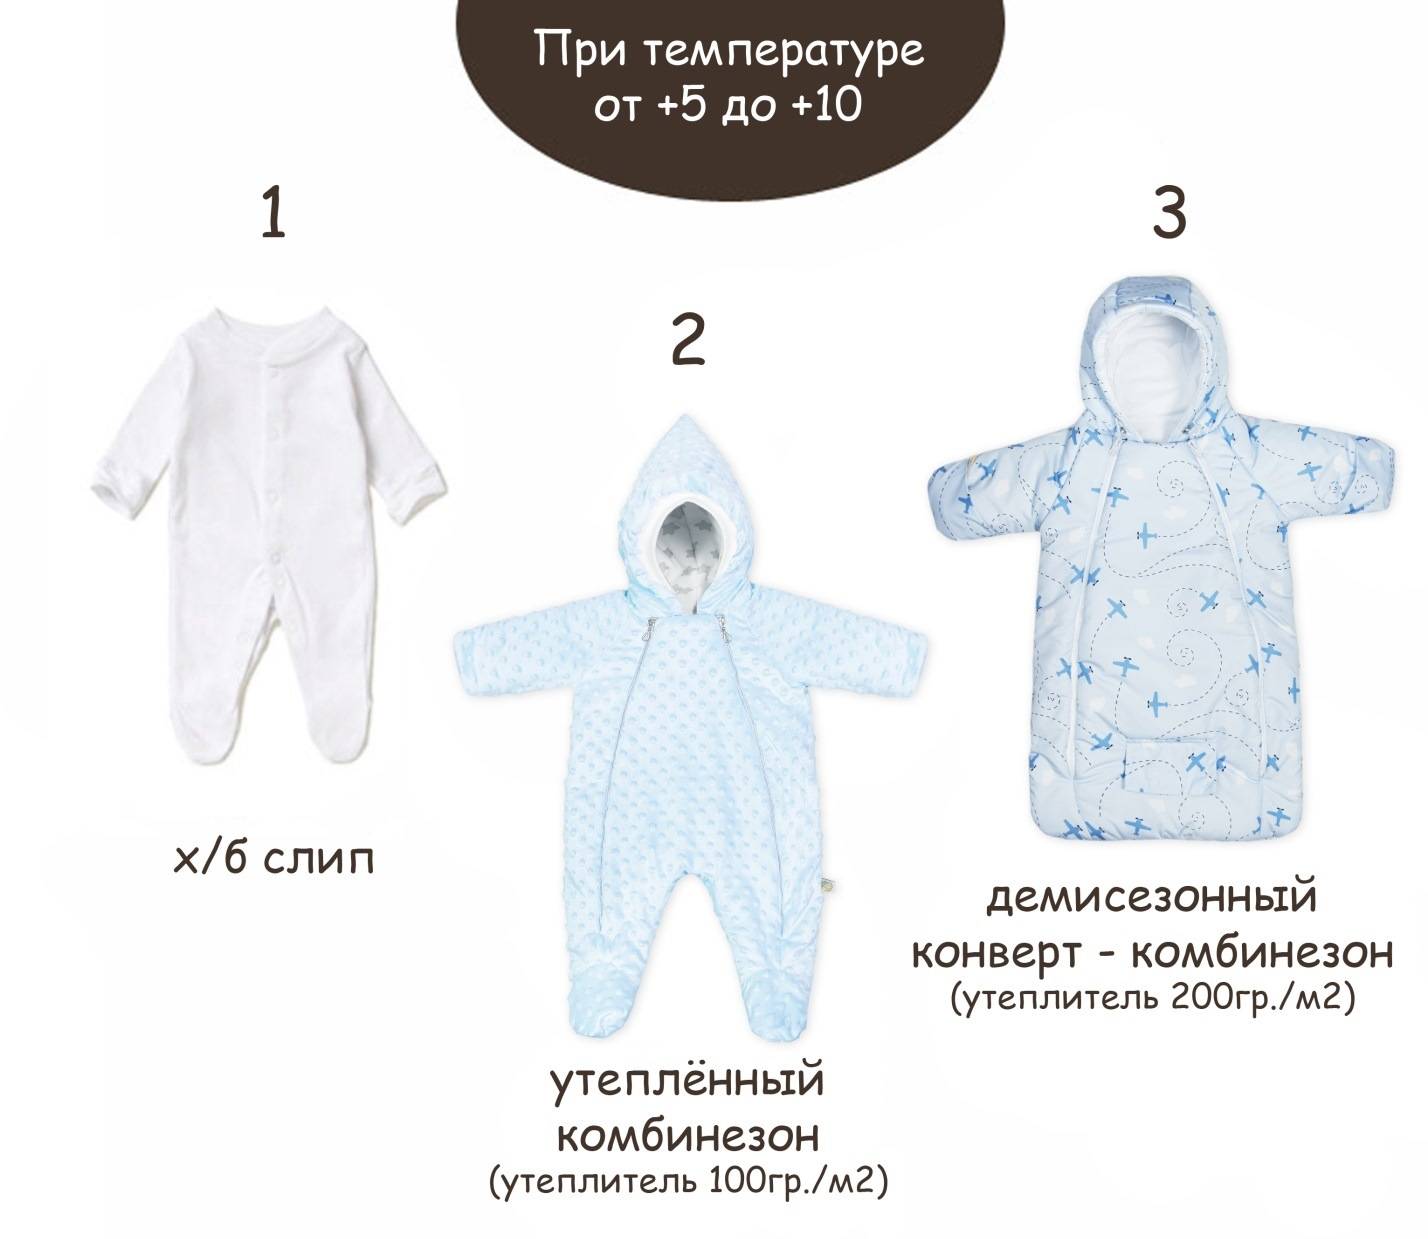 Как одевать новорожденного ребенка зимой на прогулку? весь комплект одежды и лайфхаки – онлайн-журнал "о женском"